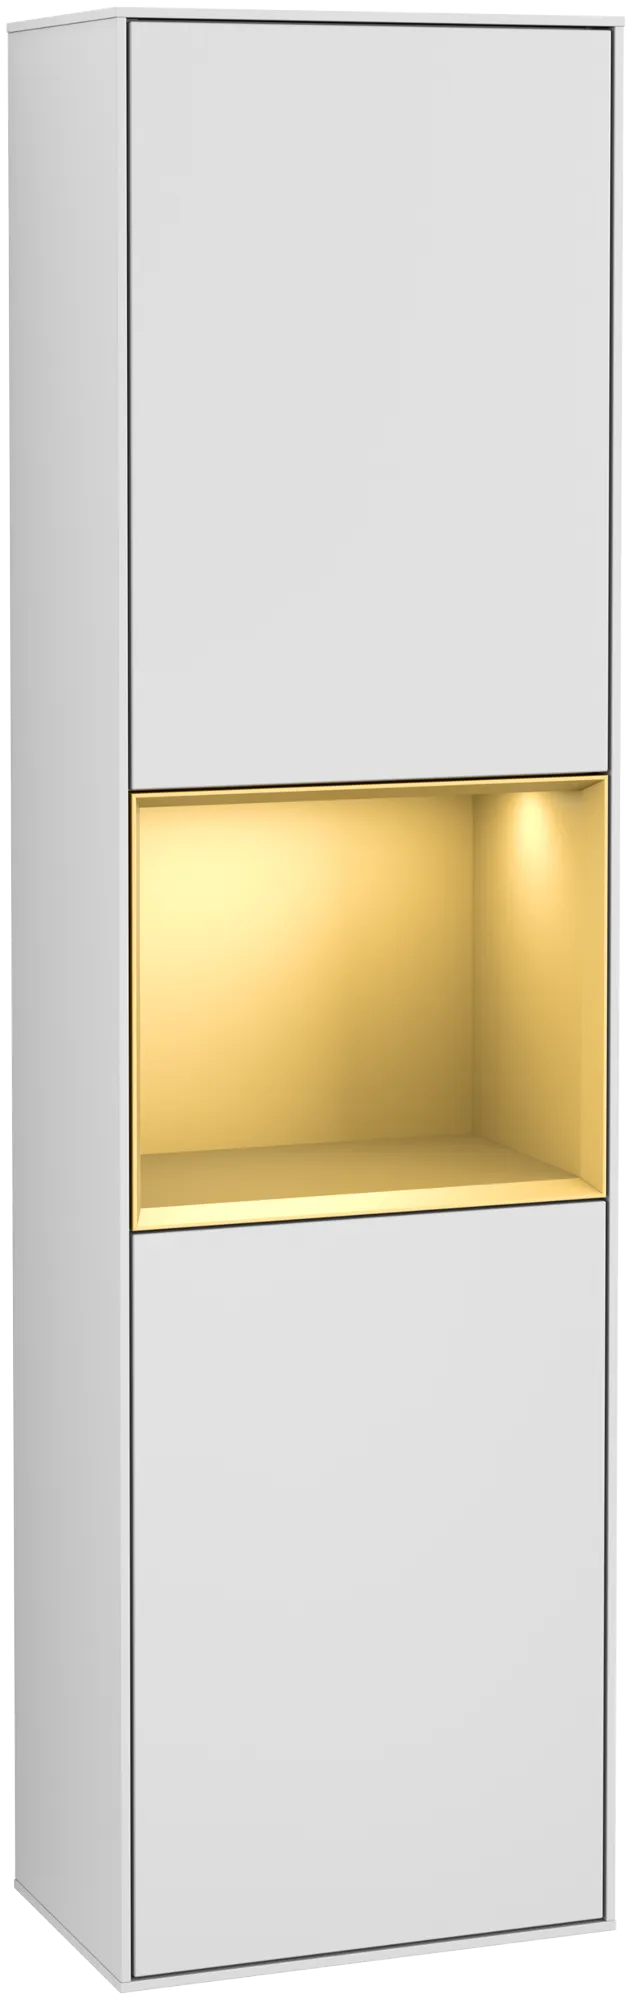 Bild von VILLEROY BOCH Finion Hochschrank, mit Beleuchtung, 2 Türen, 418 x 1516 x 270 mm, White Matt Lacquer / Gold Matt Lacquer #G470HFMT